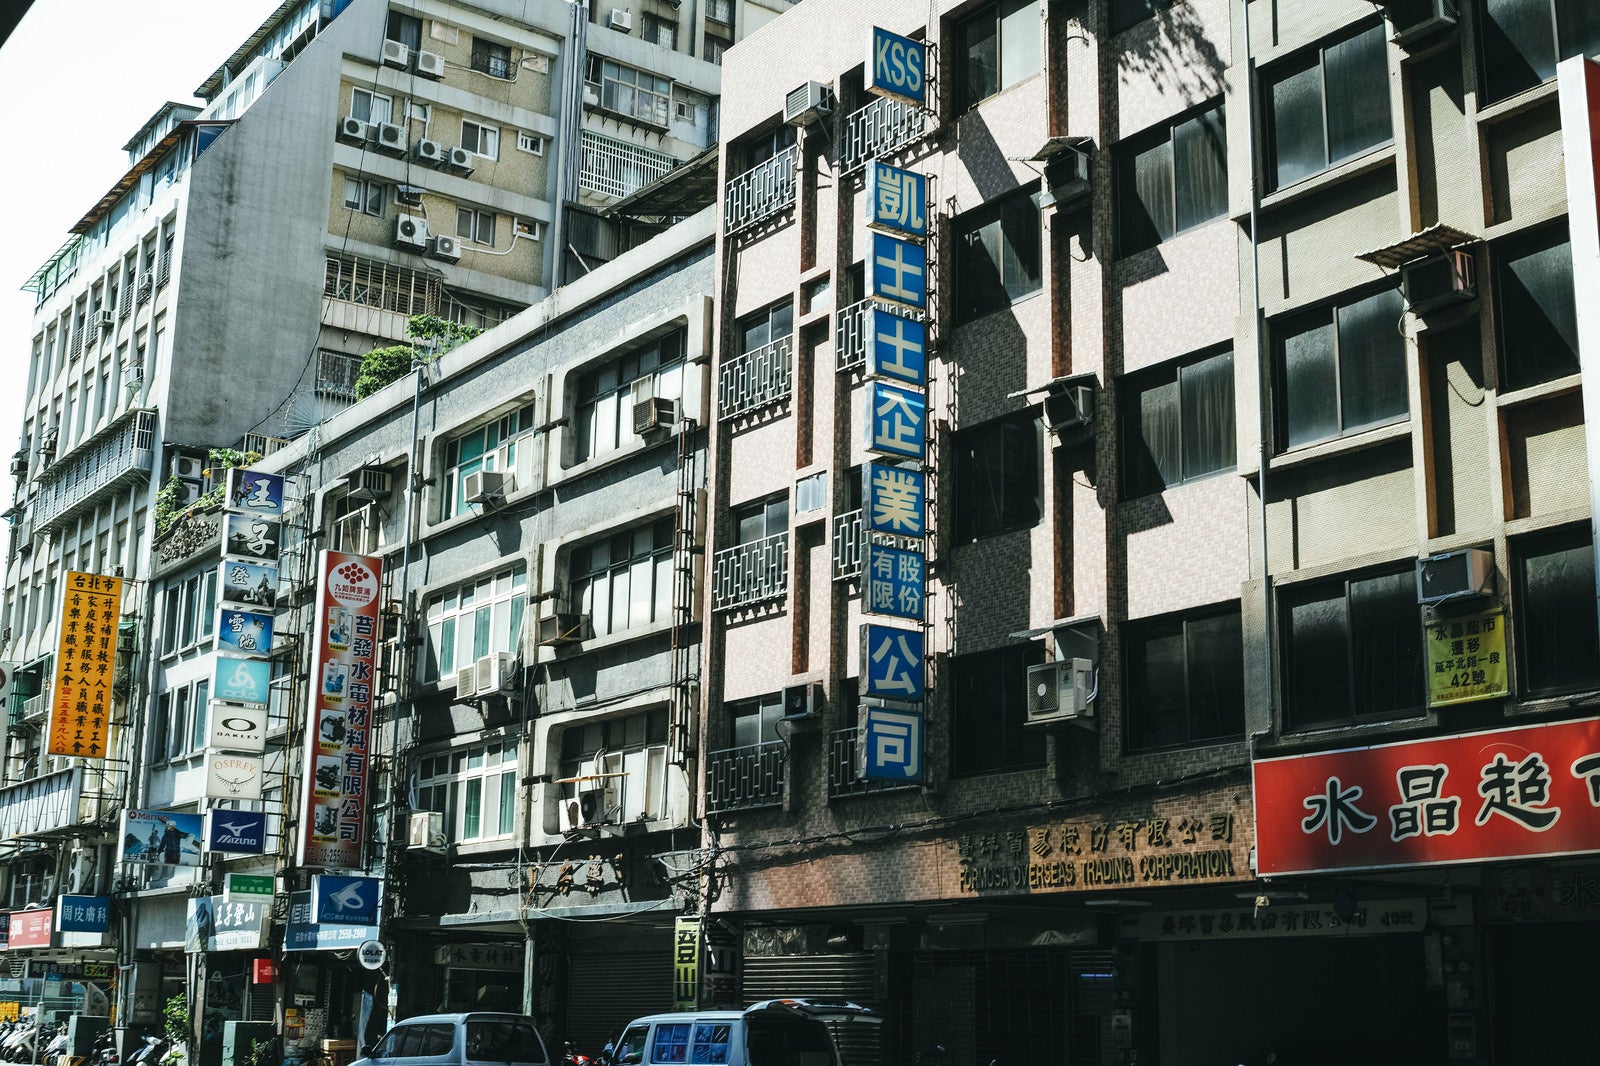 「タイペイの商店街看板（台湾）」の写真